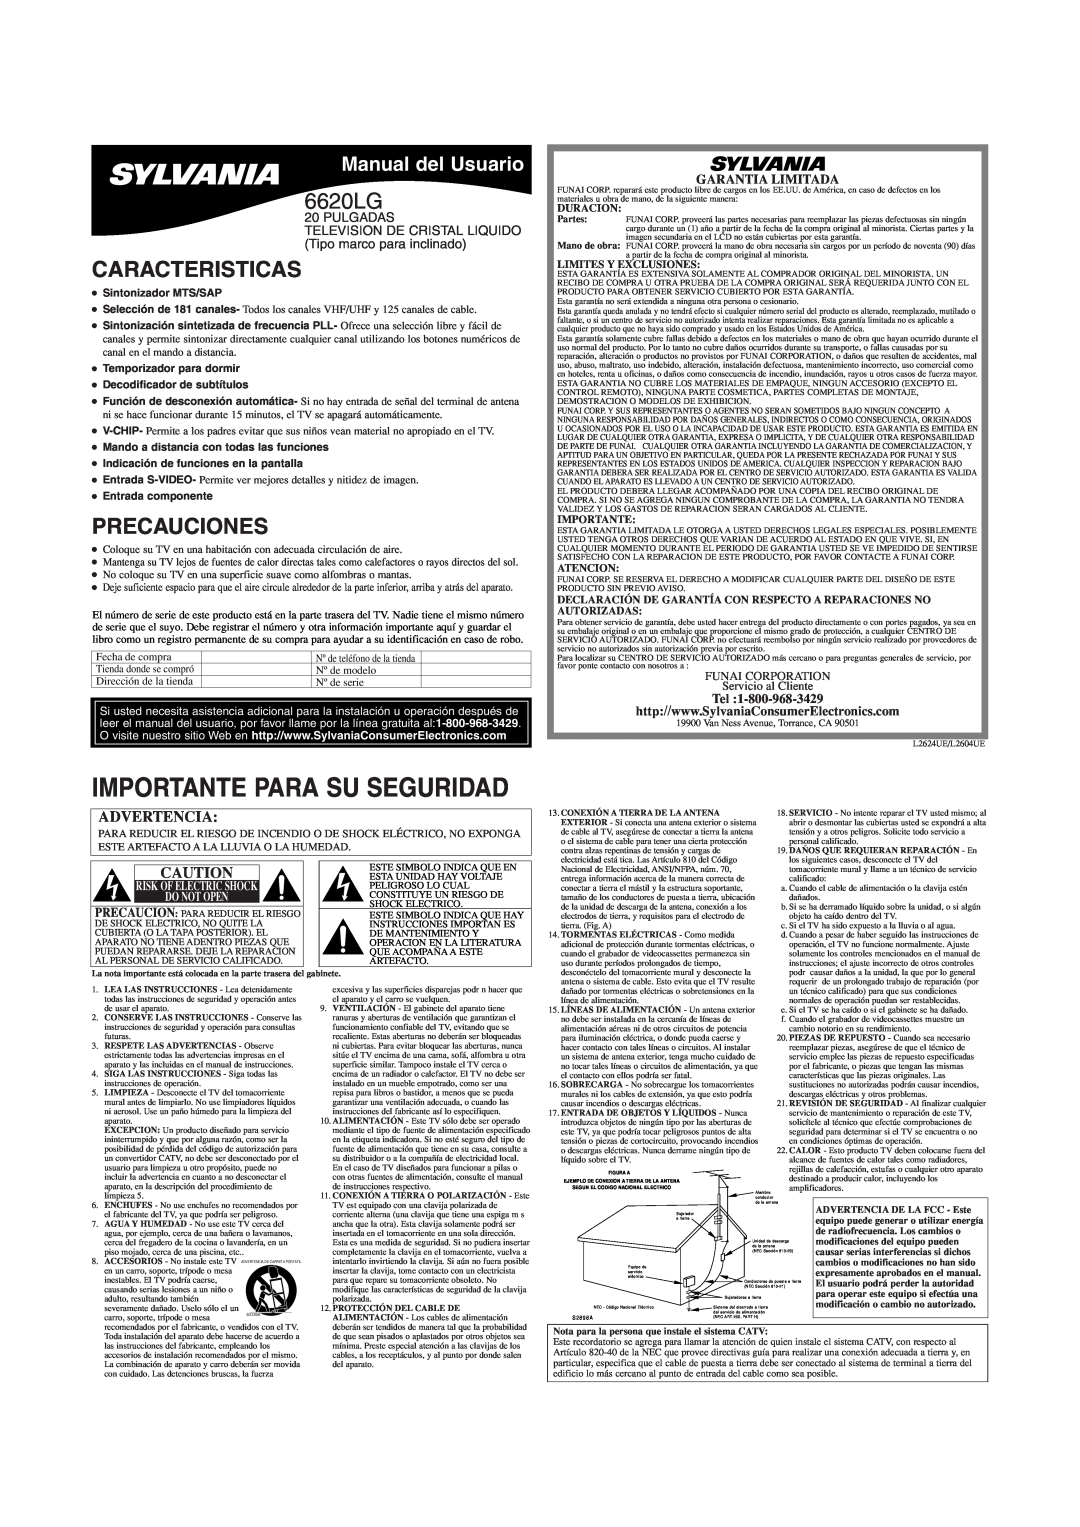 Sylvania 6620LG Caracteristicas, Precauciones, Manual del Usuario, Garantia Limitada, Importante Para Su Seguridad 